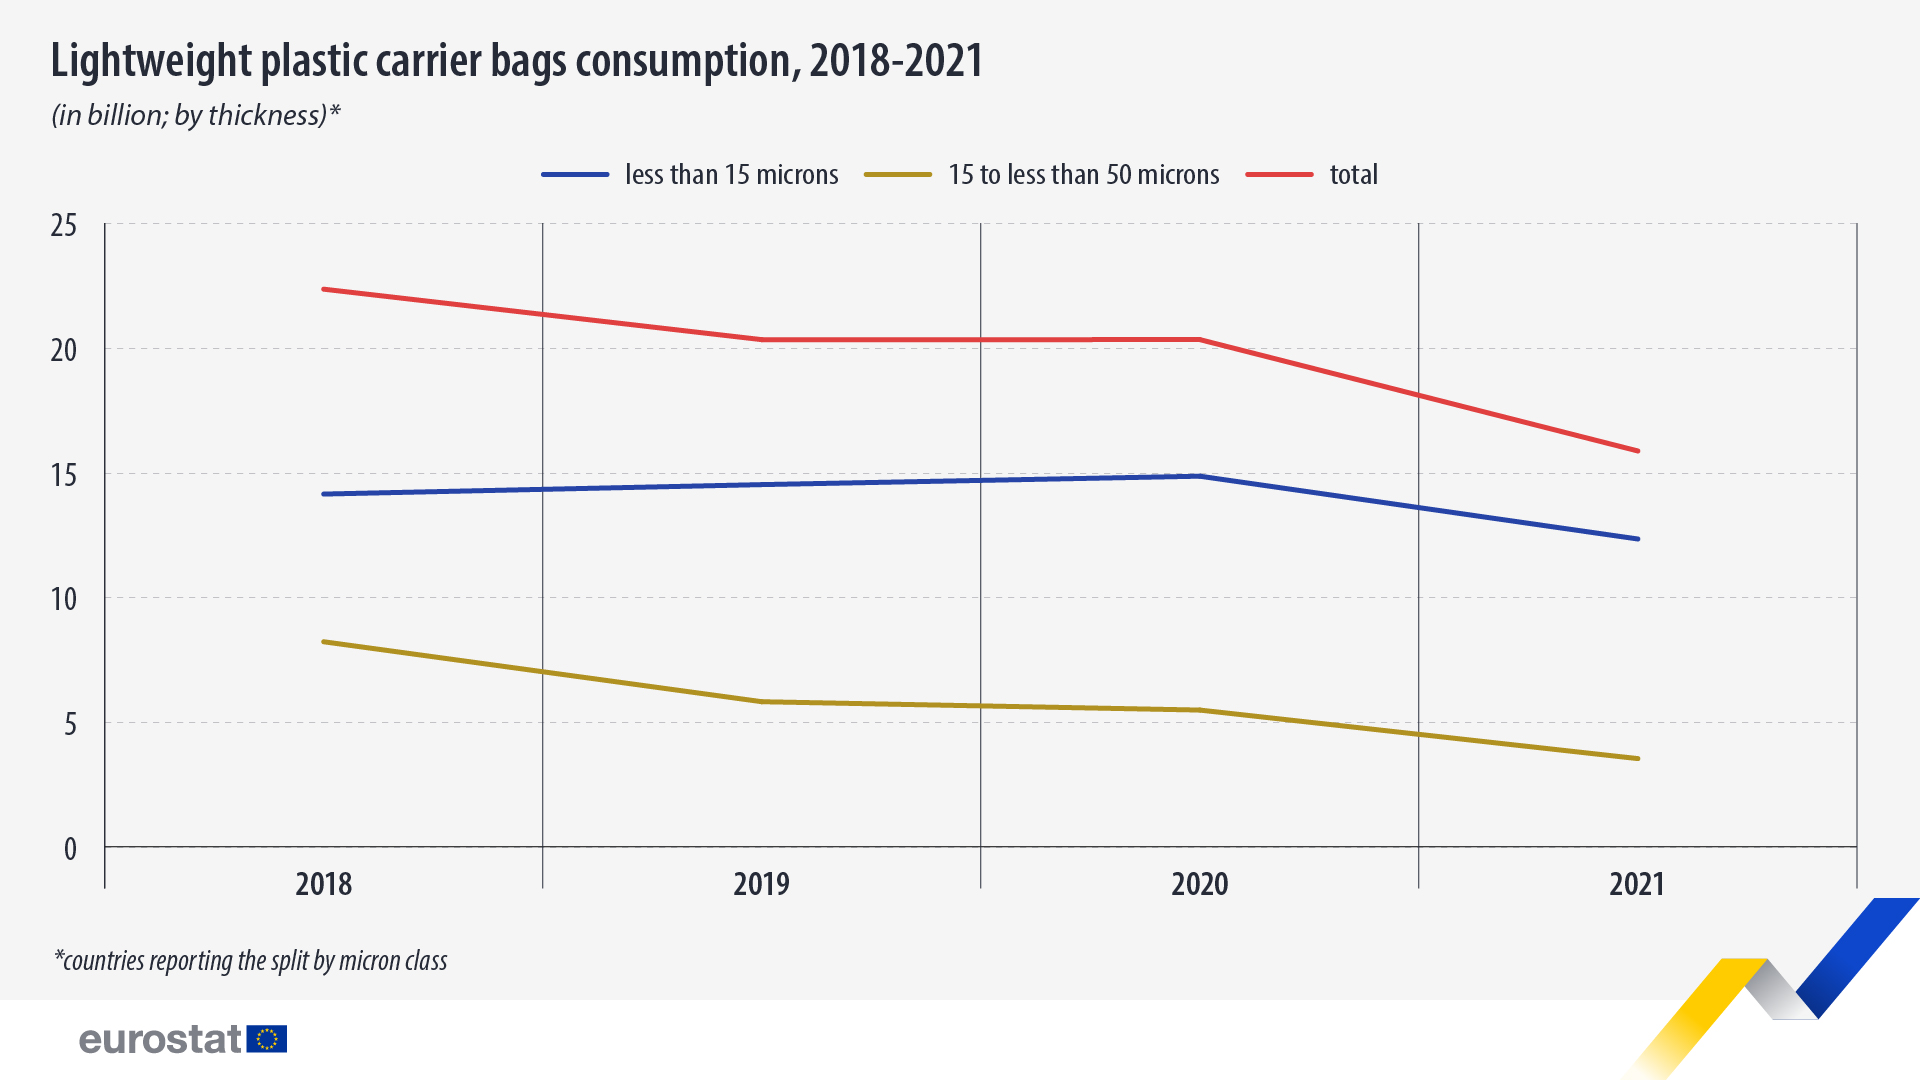 Viivakaavio: Kevyiden muovisten kantokassien kulutus, milj., 2018-2021